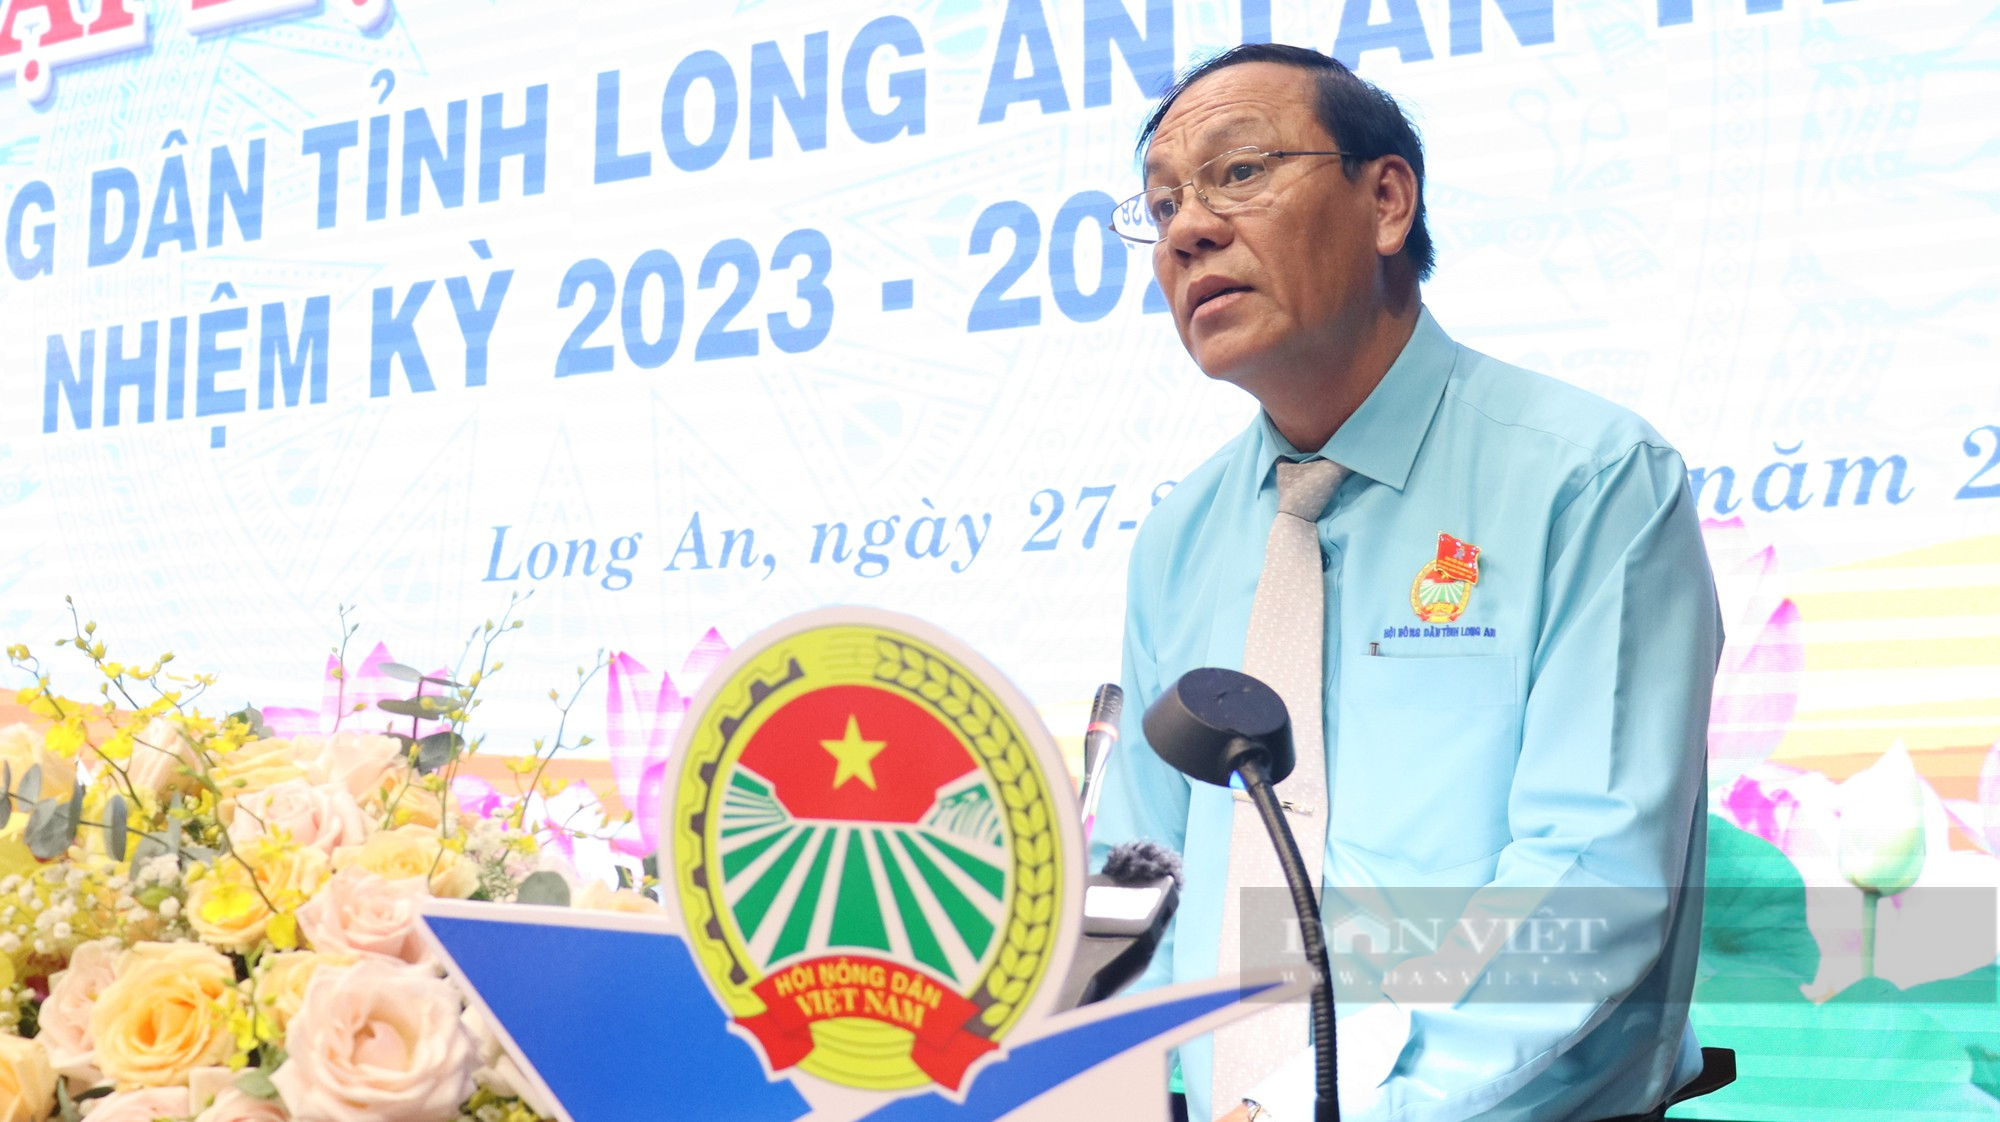 Đại hội HND tỉnh Long An, nhiệm kỳ 2023 - 2028: Xây dựng người nông dân Long An chuyên nghiệp, văn minh - Ảnh 3.